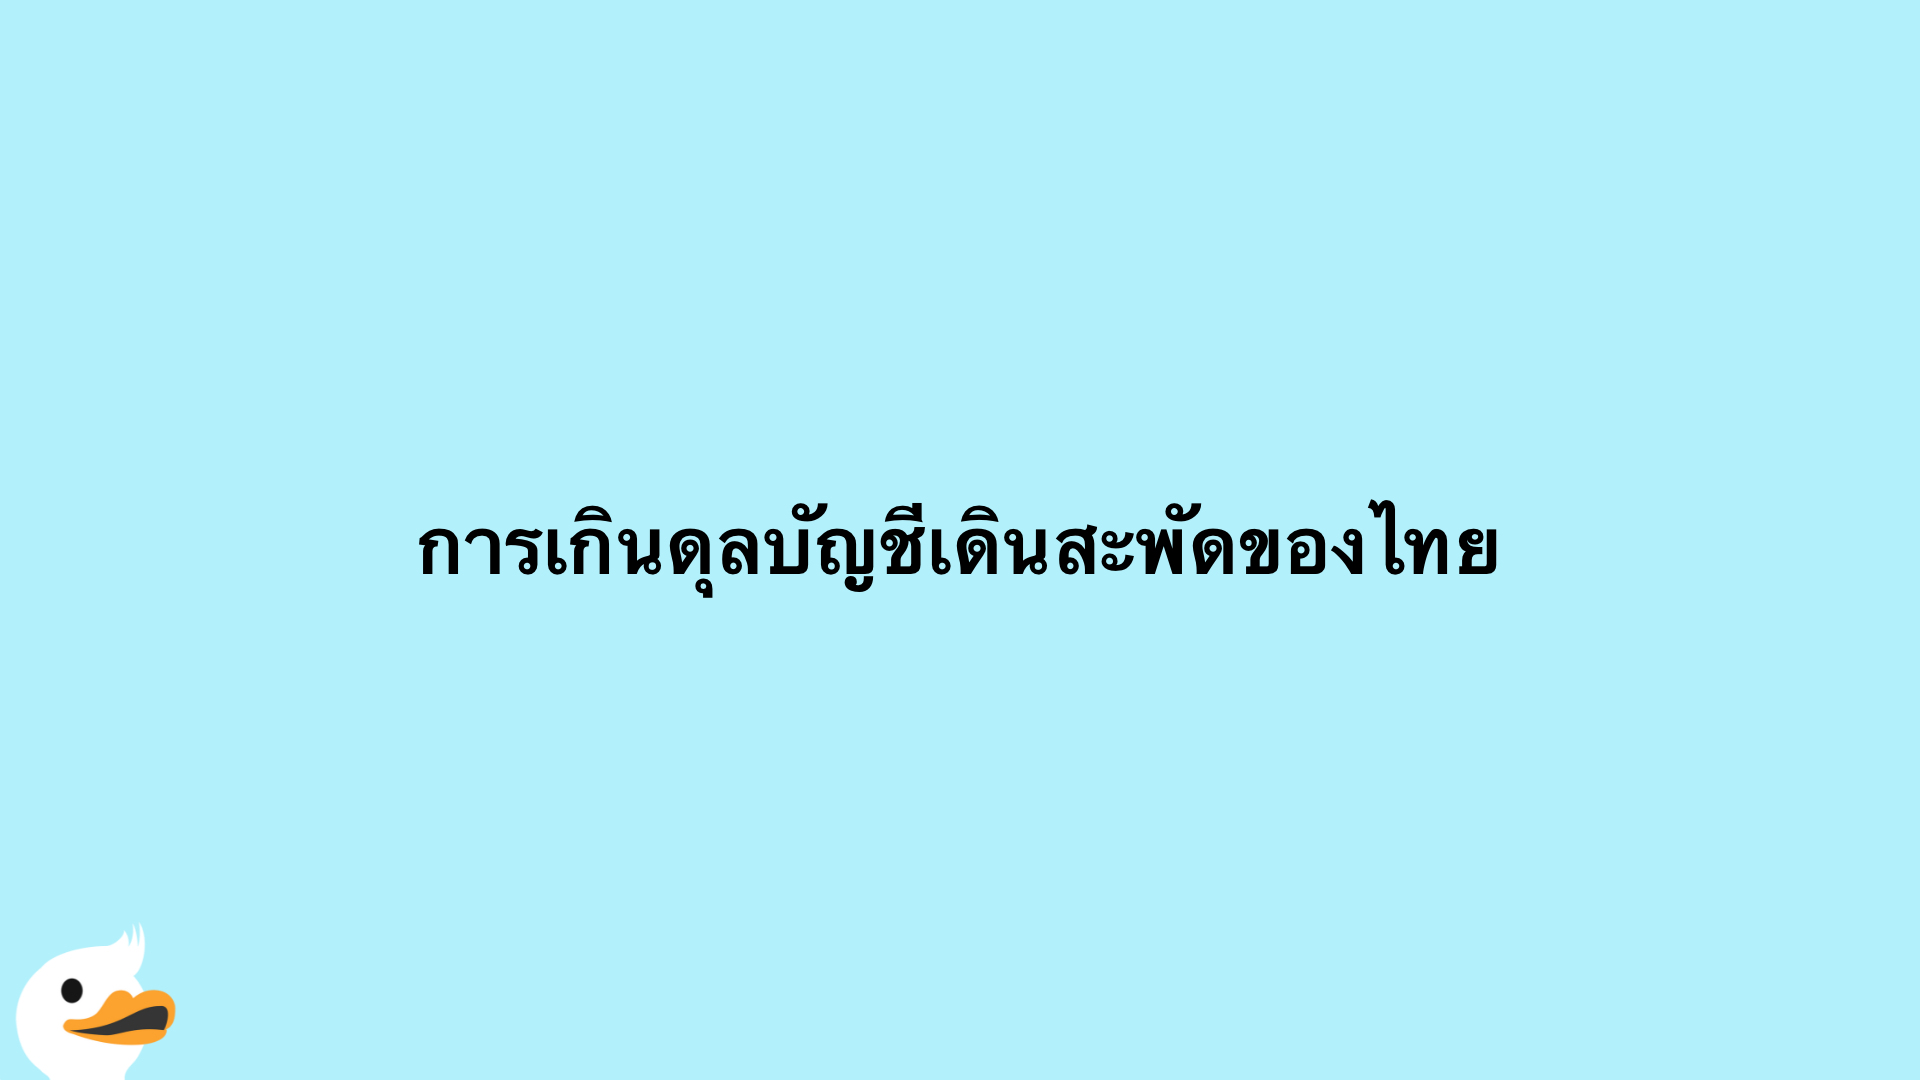 การเกินดุลบัญชีเดินสะพัดของไทย